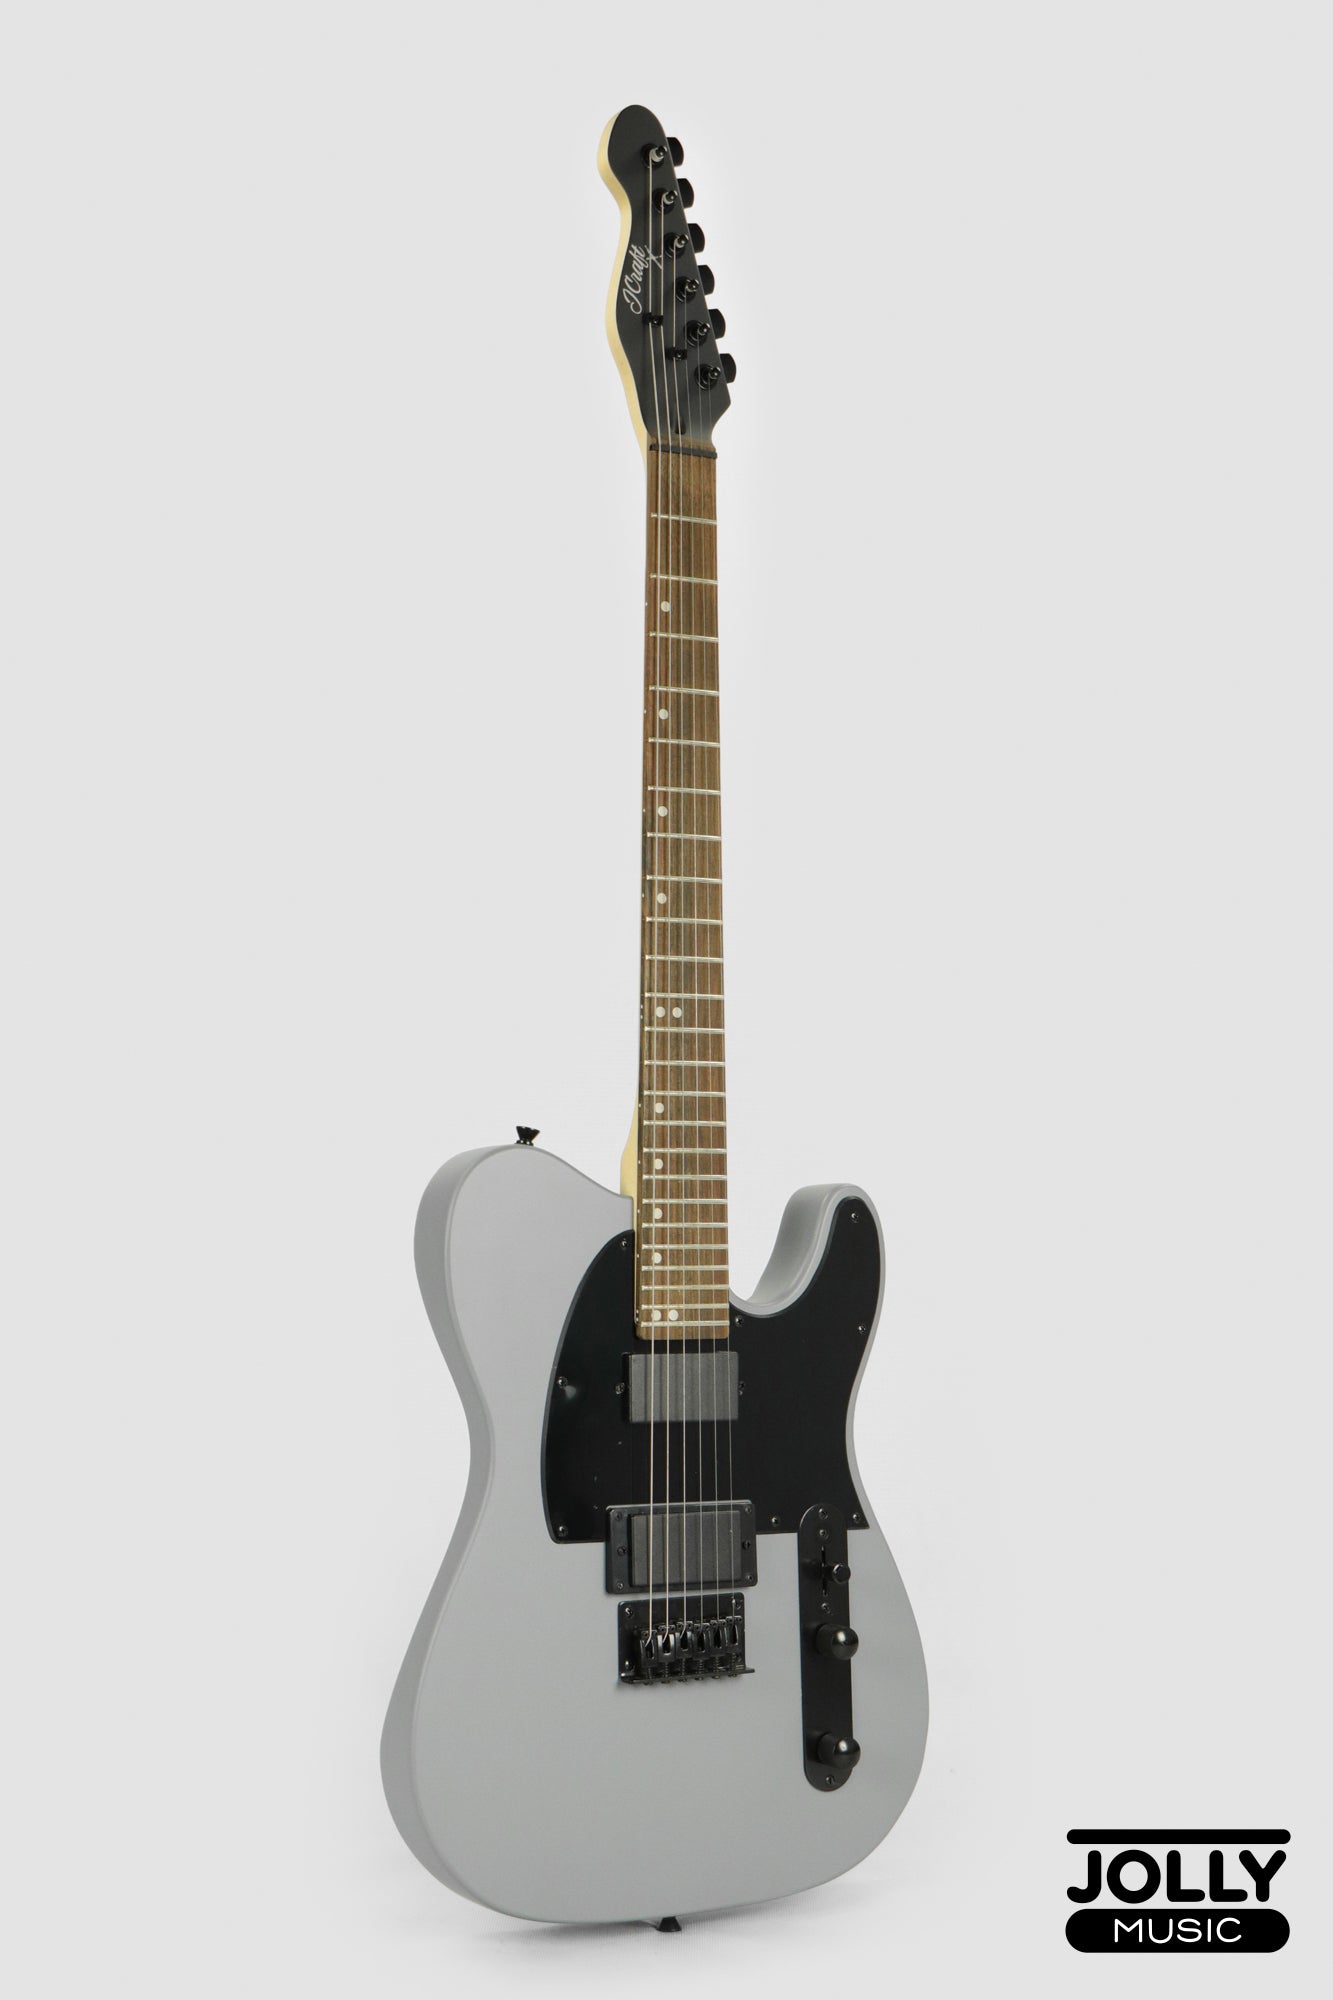 JCraft X Series LTX-2 Electric Guitar - Gunmetal